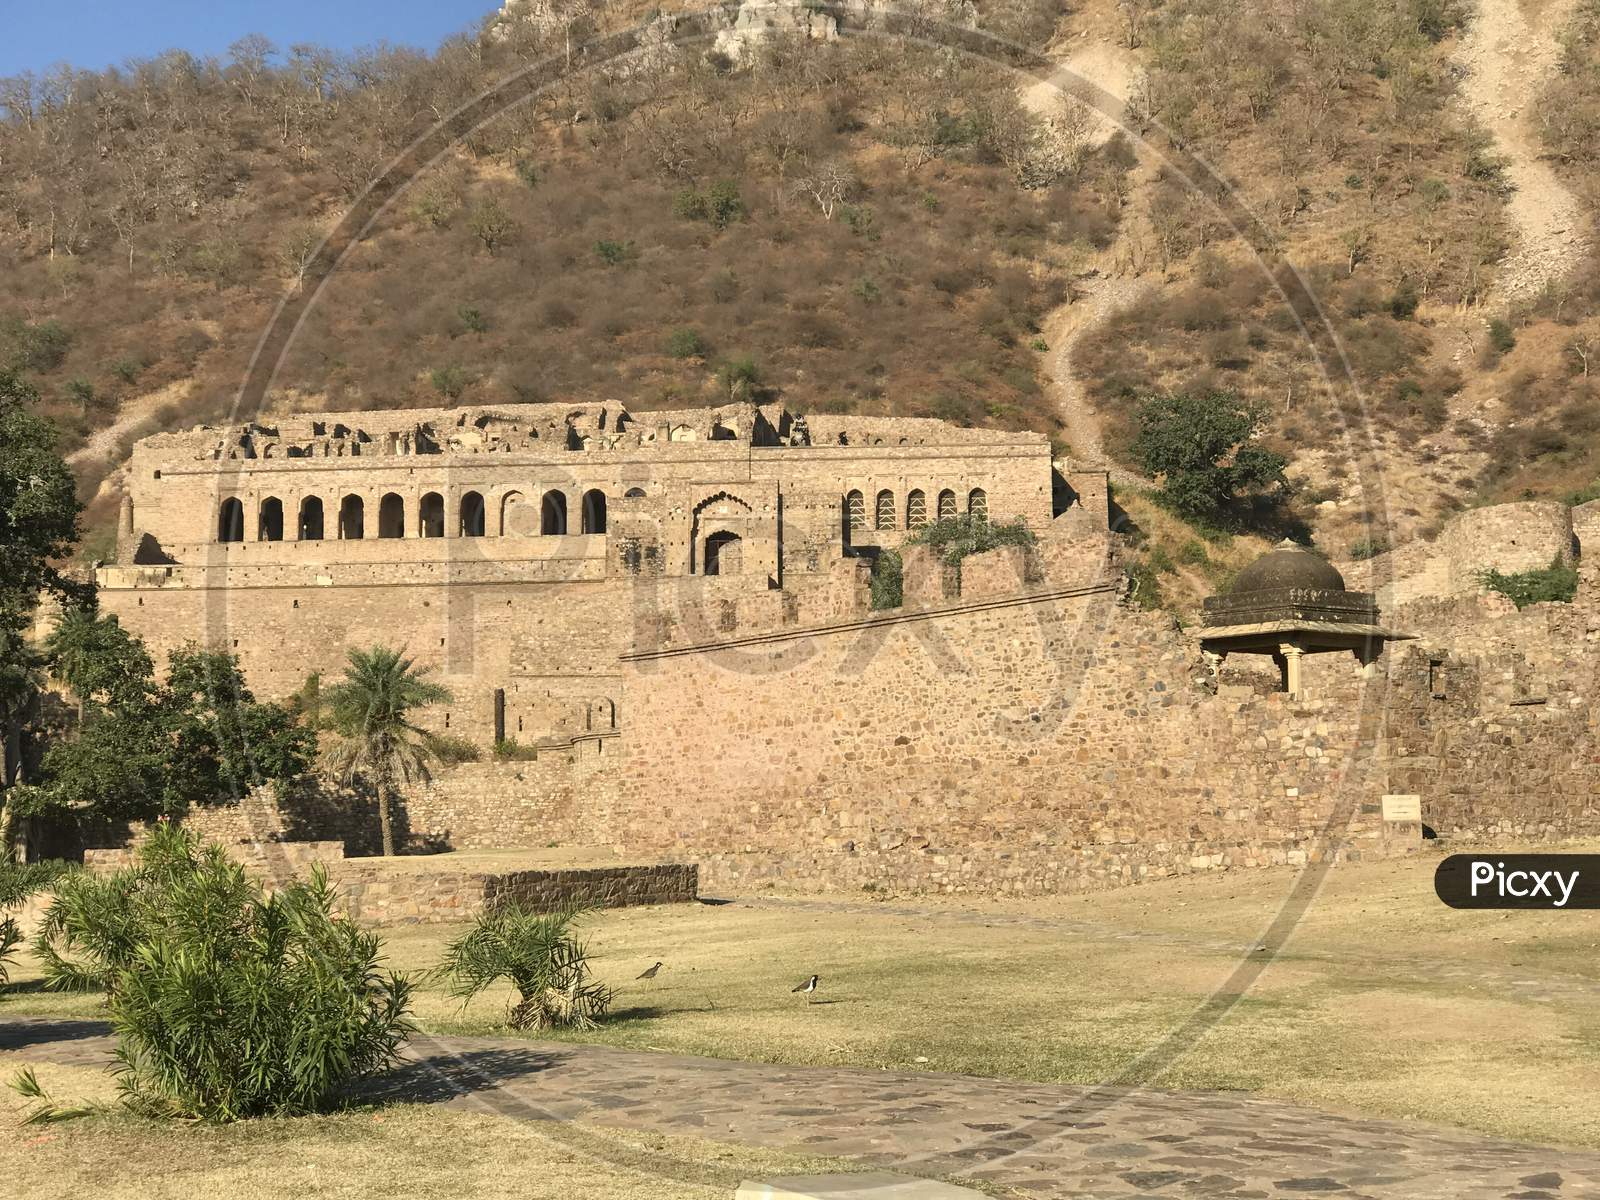 Bhangarh fort